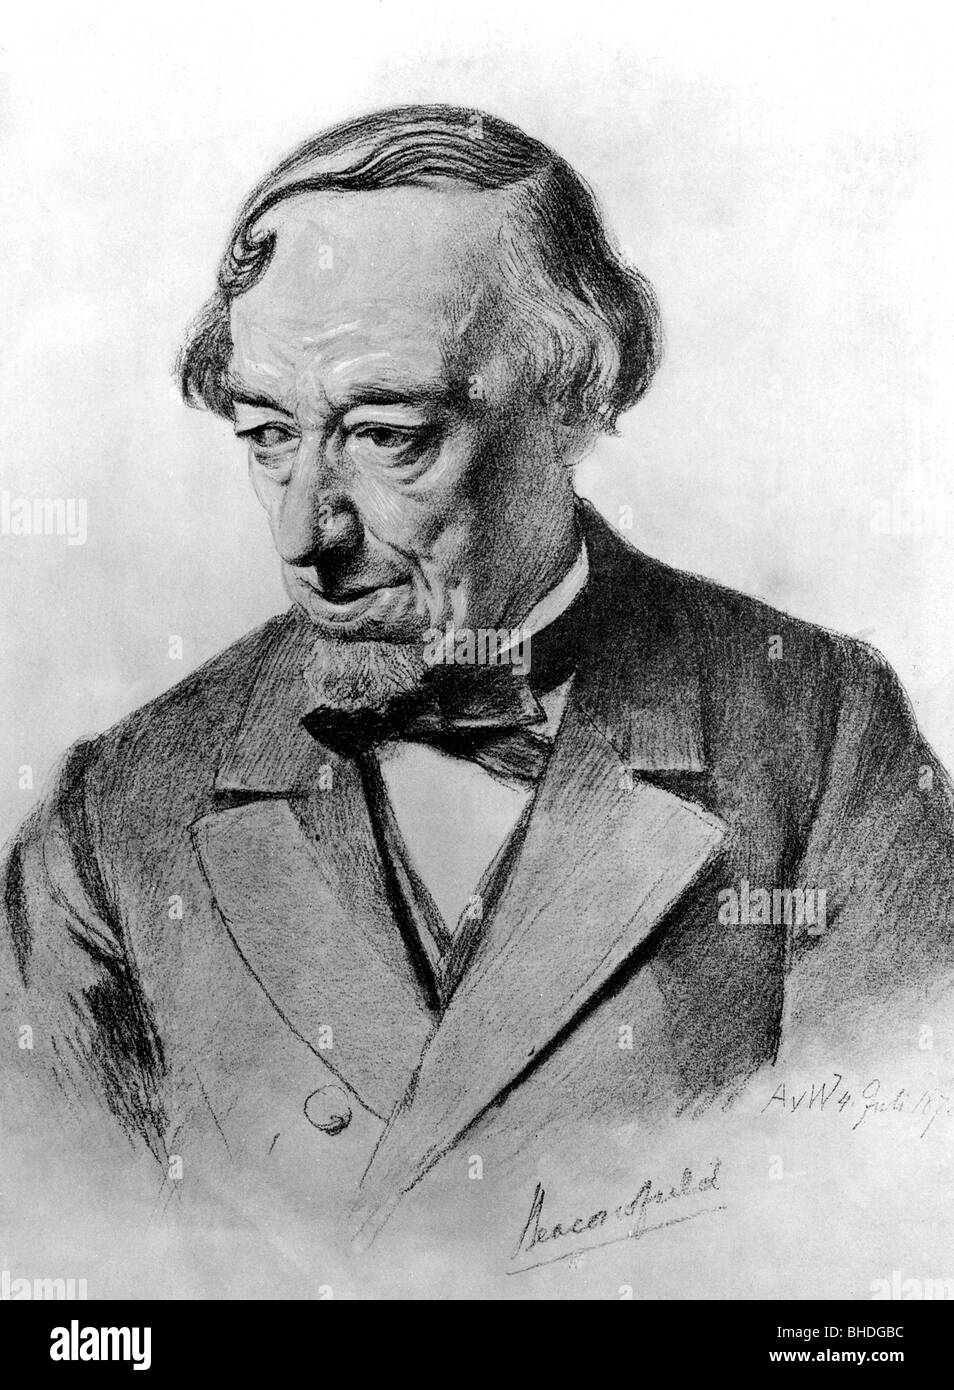 Disraeli, Benjamin, primer conde de Beaconsfield, 21.12.1804 - 19.4.1881, político británico (conservador), primer ministro 1868 y 1874 - 1880, retrato, dibujo, 1878, Foto de stock